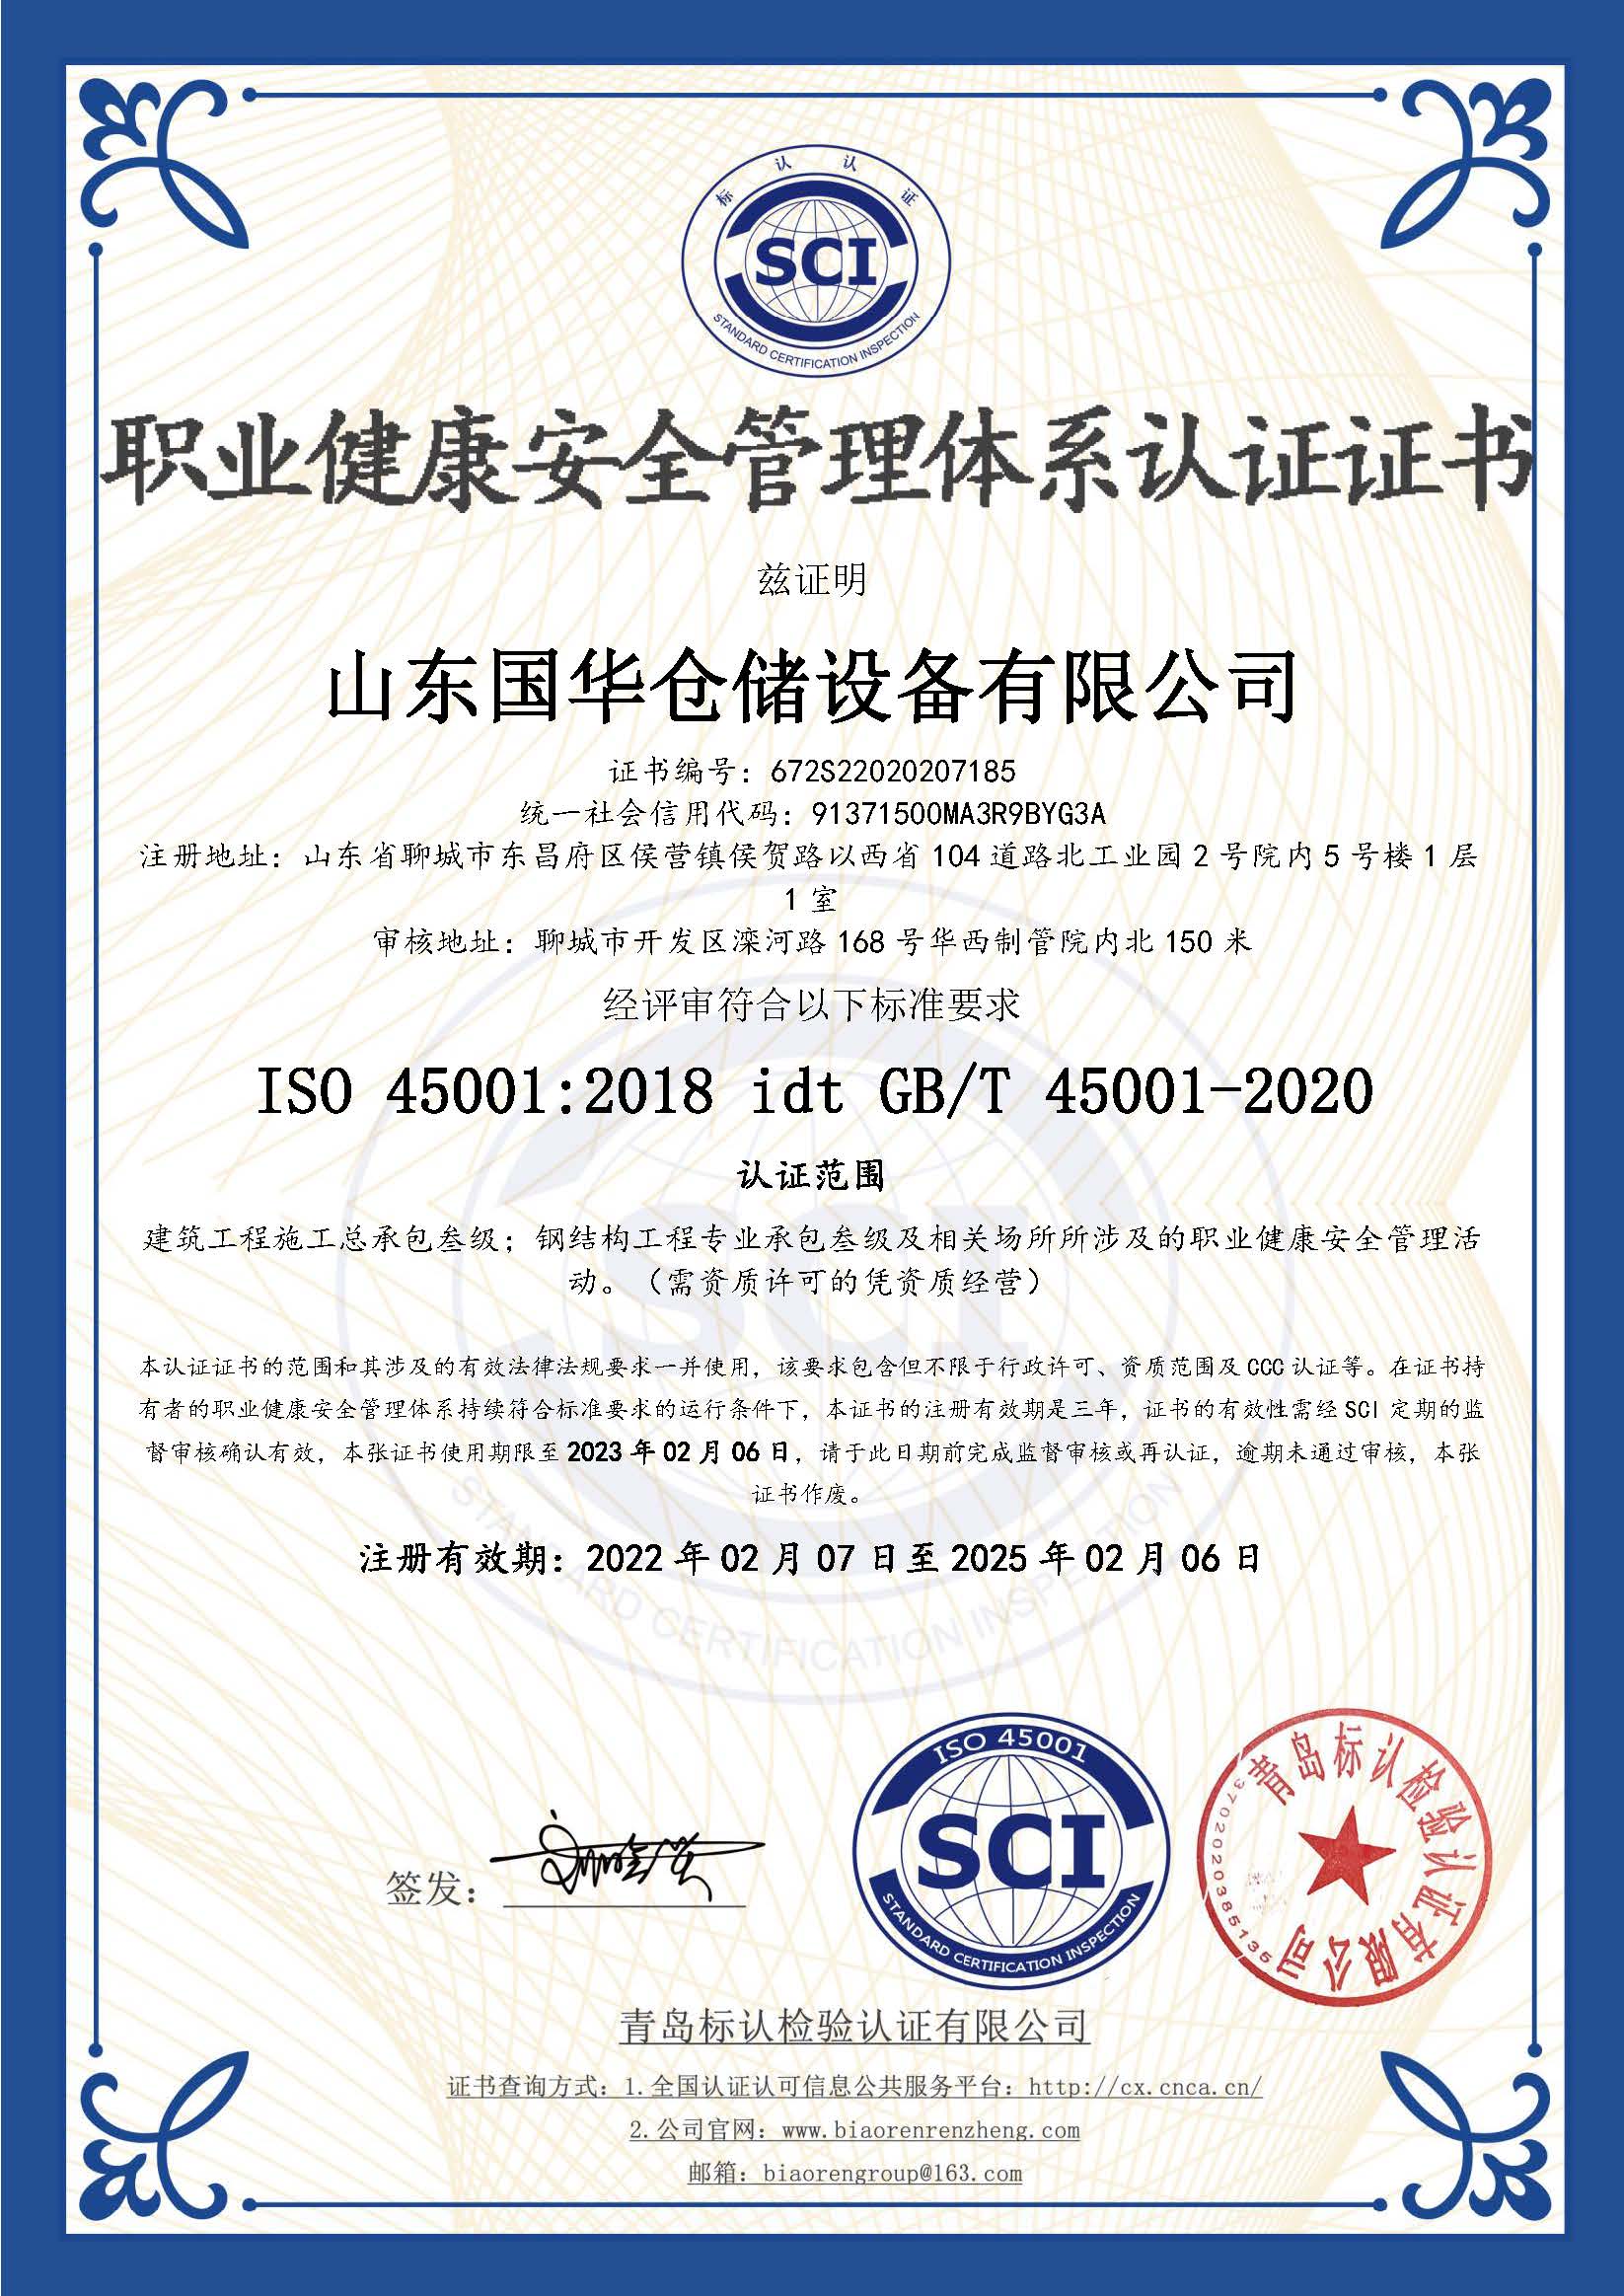 德阳钢板仓职业健康安全管理体系认证证书